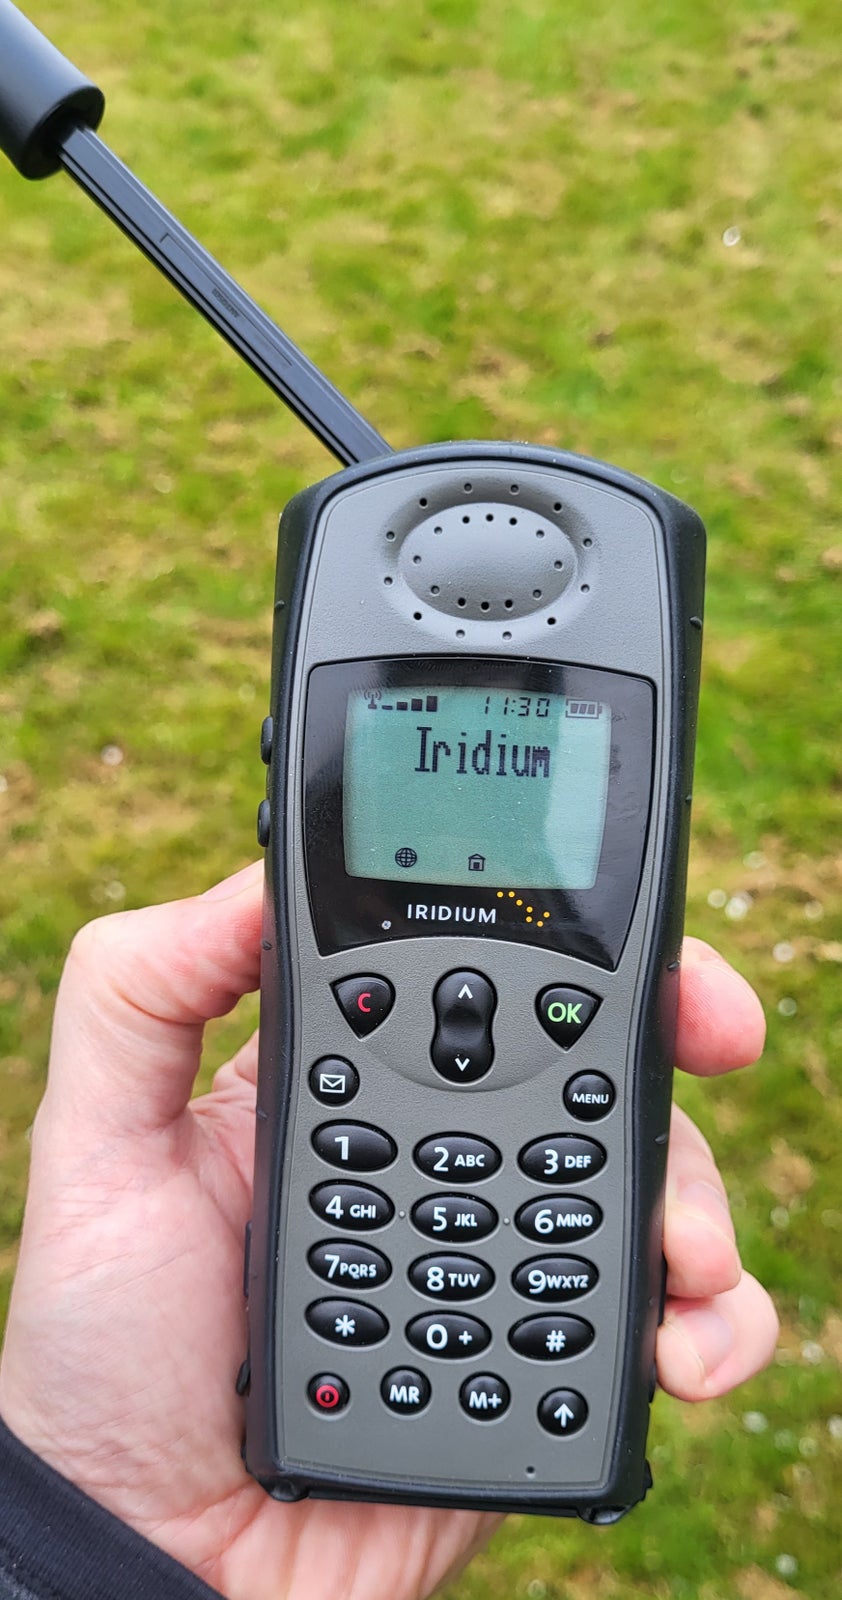 Satellit telefon - Iridium 9505a

Har været bru...